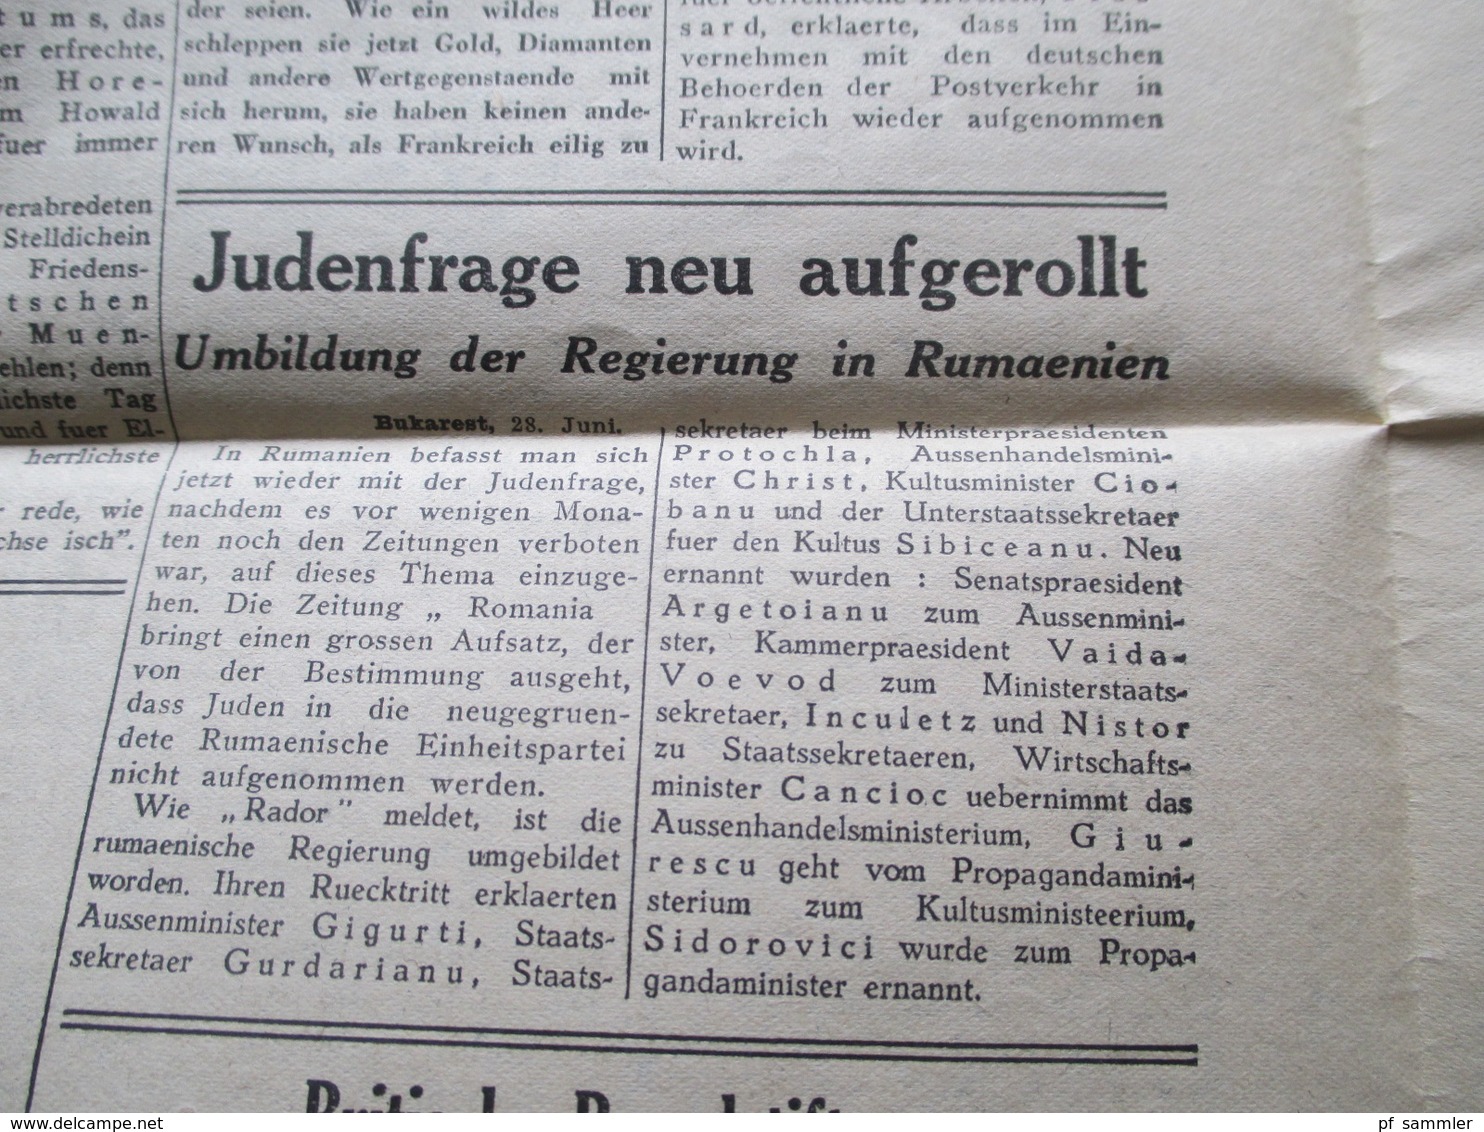 3.Reich Sonnabend, 29. Juni 1940 alte Zeitung Der Vormarsch Paris, Nr. 12 Herausgeber Prop. Kompanie Propaganda Zeitung